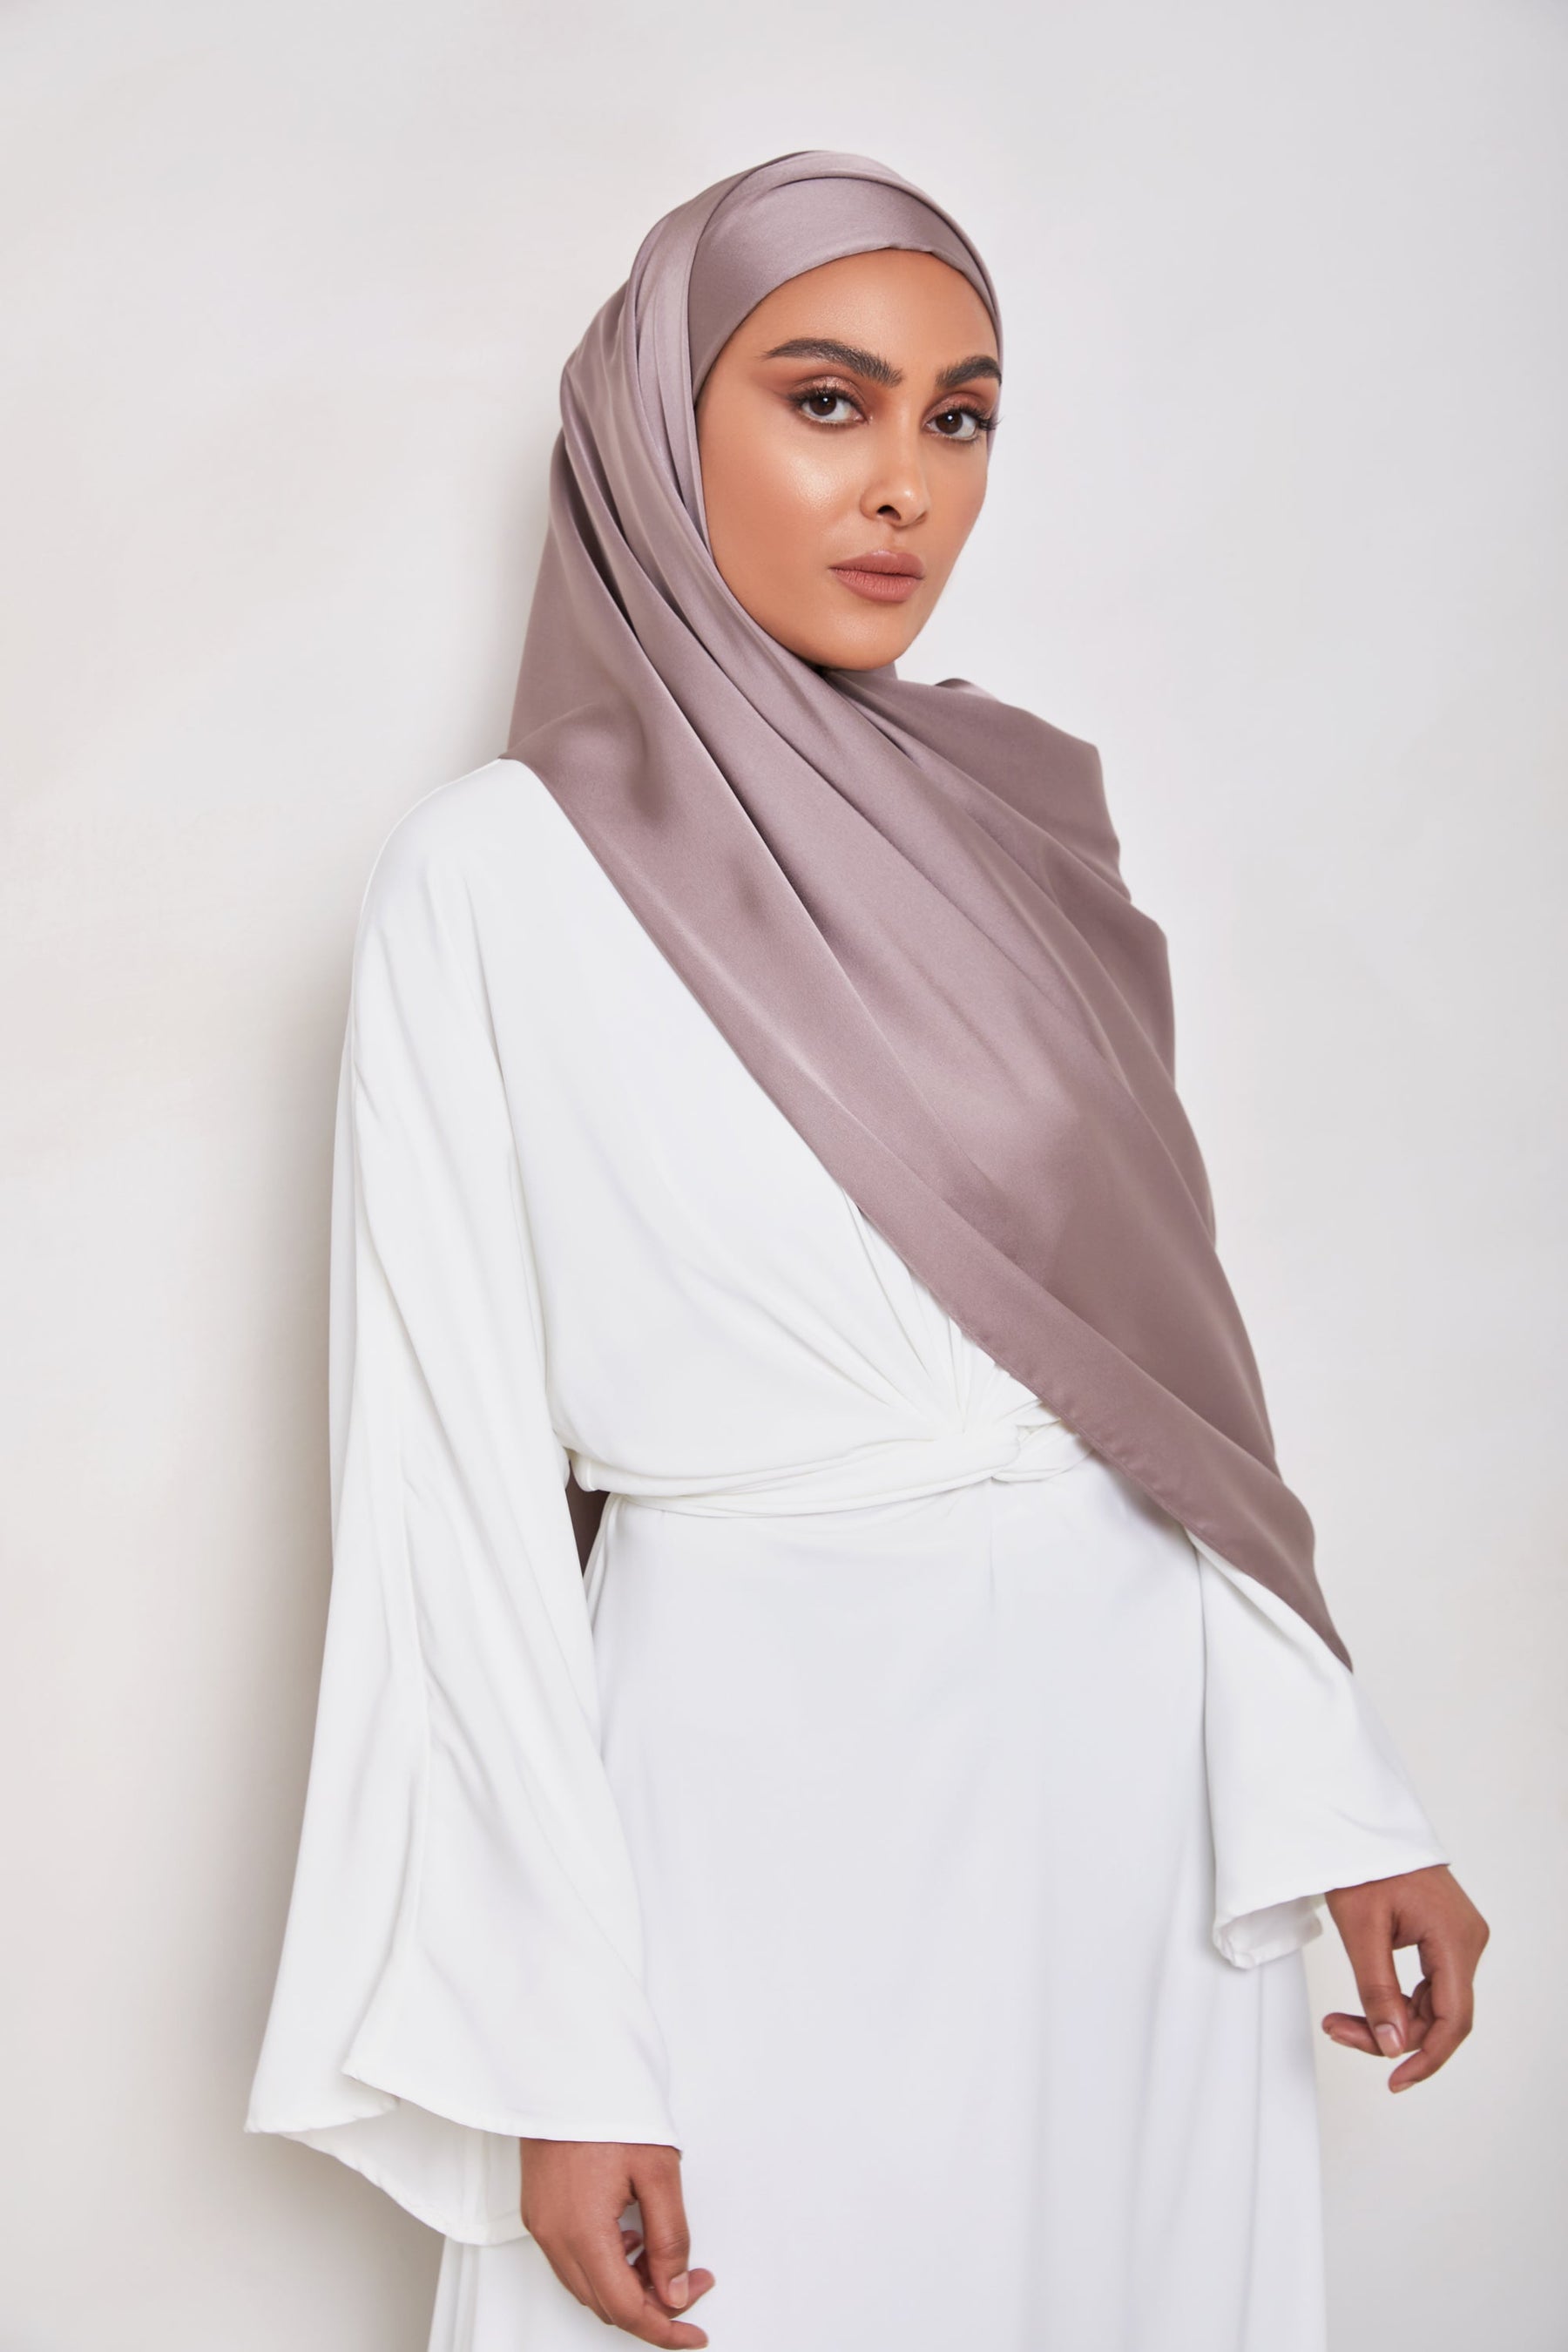 TEXTURE Satin Hijab - Luscious Veiled Collection 